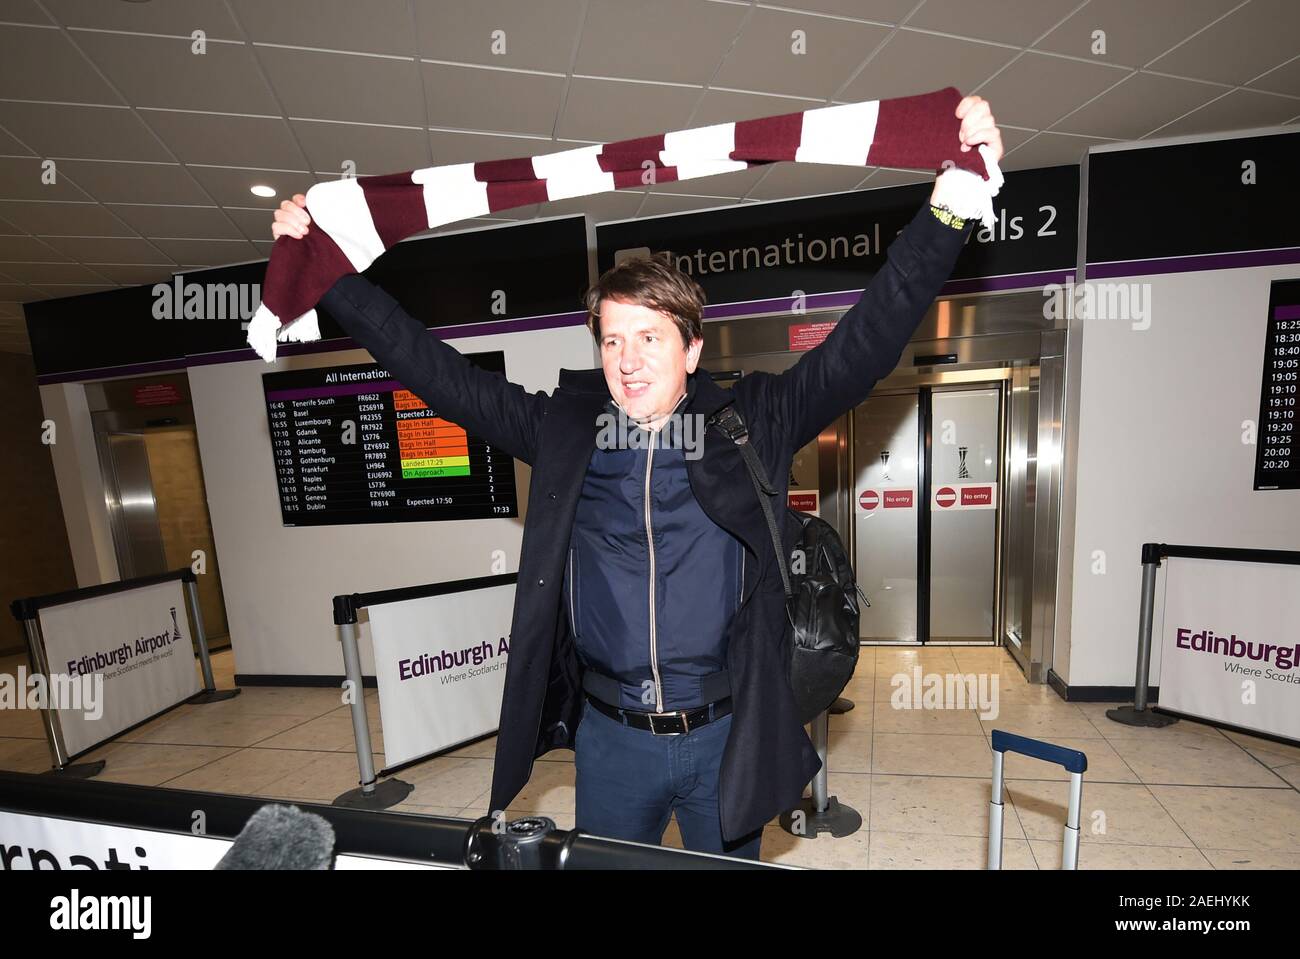 L'aéroport d'Édimbourg, Écosse, Royaume-Uni.9e 19 déc. Coeur nouveau manager Daniel Stendel. arrive l'aéroport d'Édimbourg à partir de l'Allemagne, pour prendre son rendez-vous avec le Club de Murrayfield. Crédit photo : eric mccowat/Alamy Live News Banque D'Images